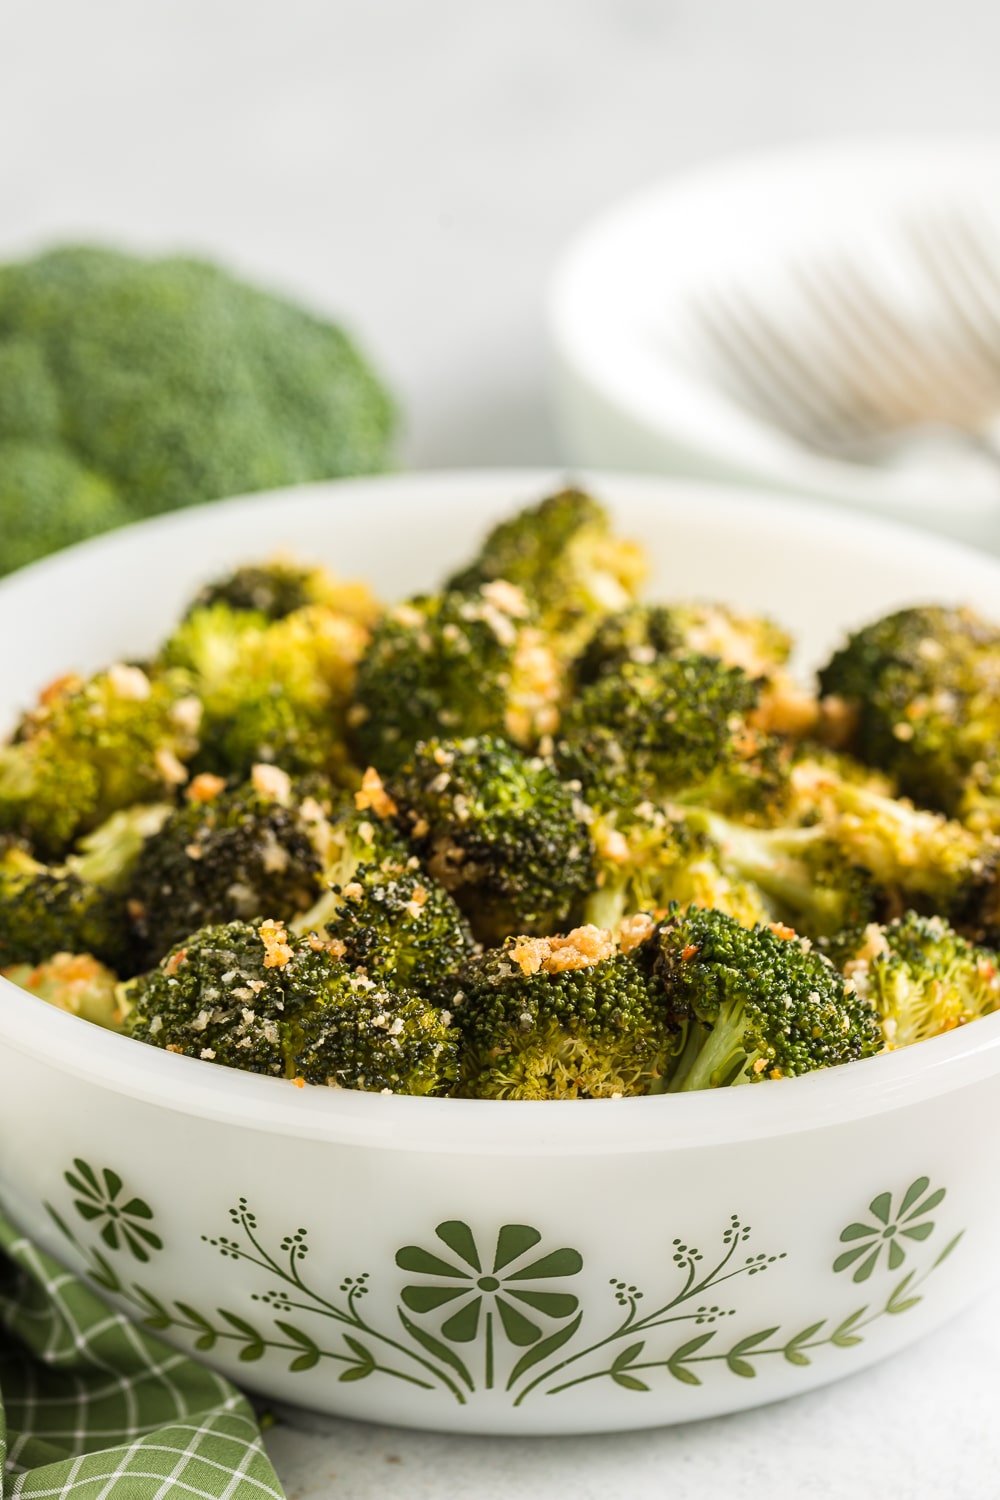 Roasted Parmesan Broccoli